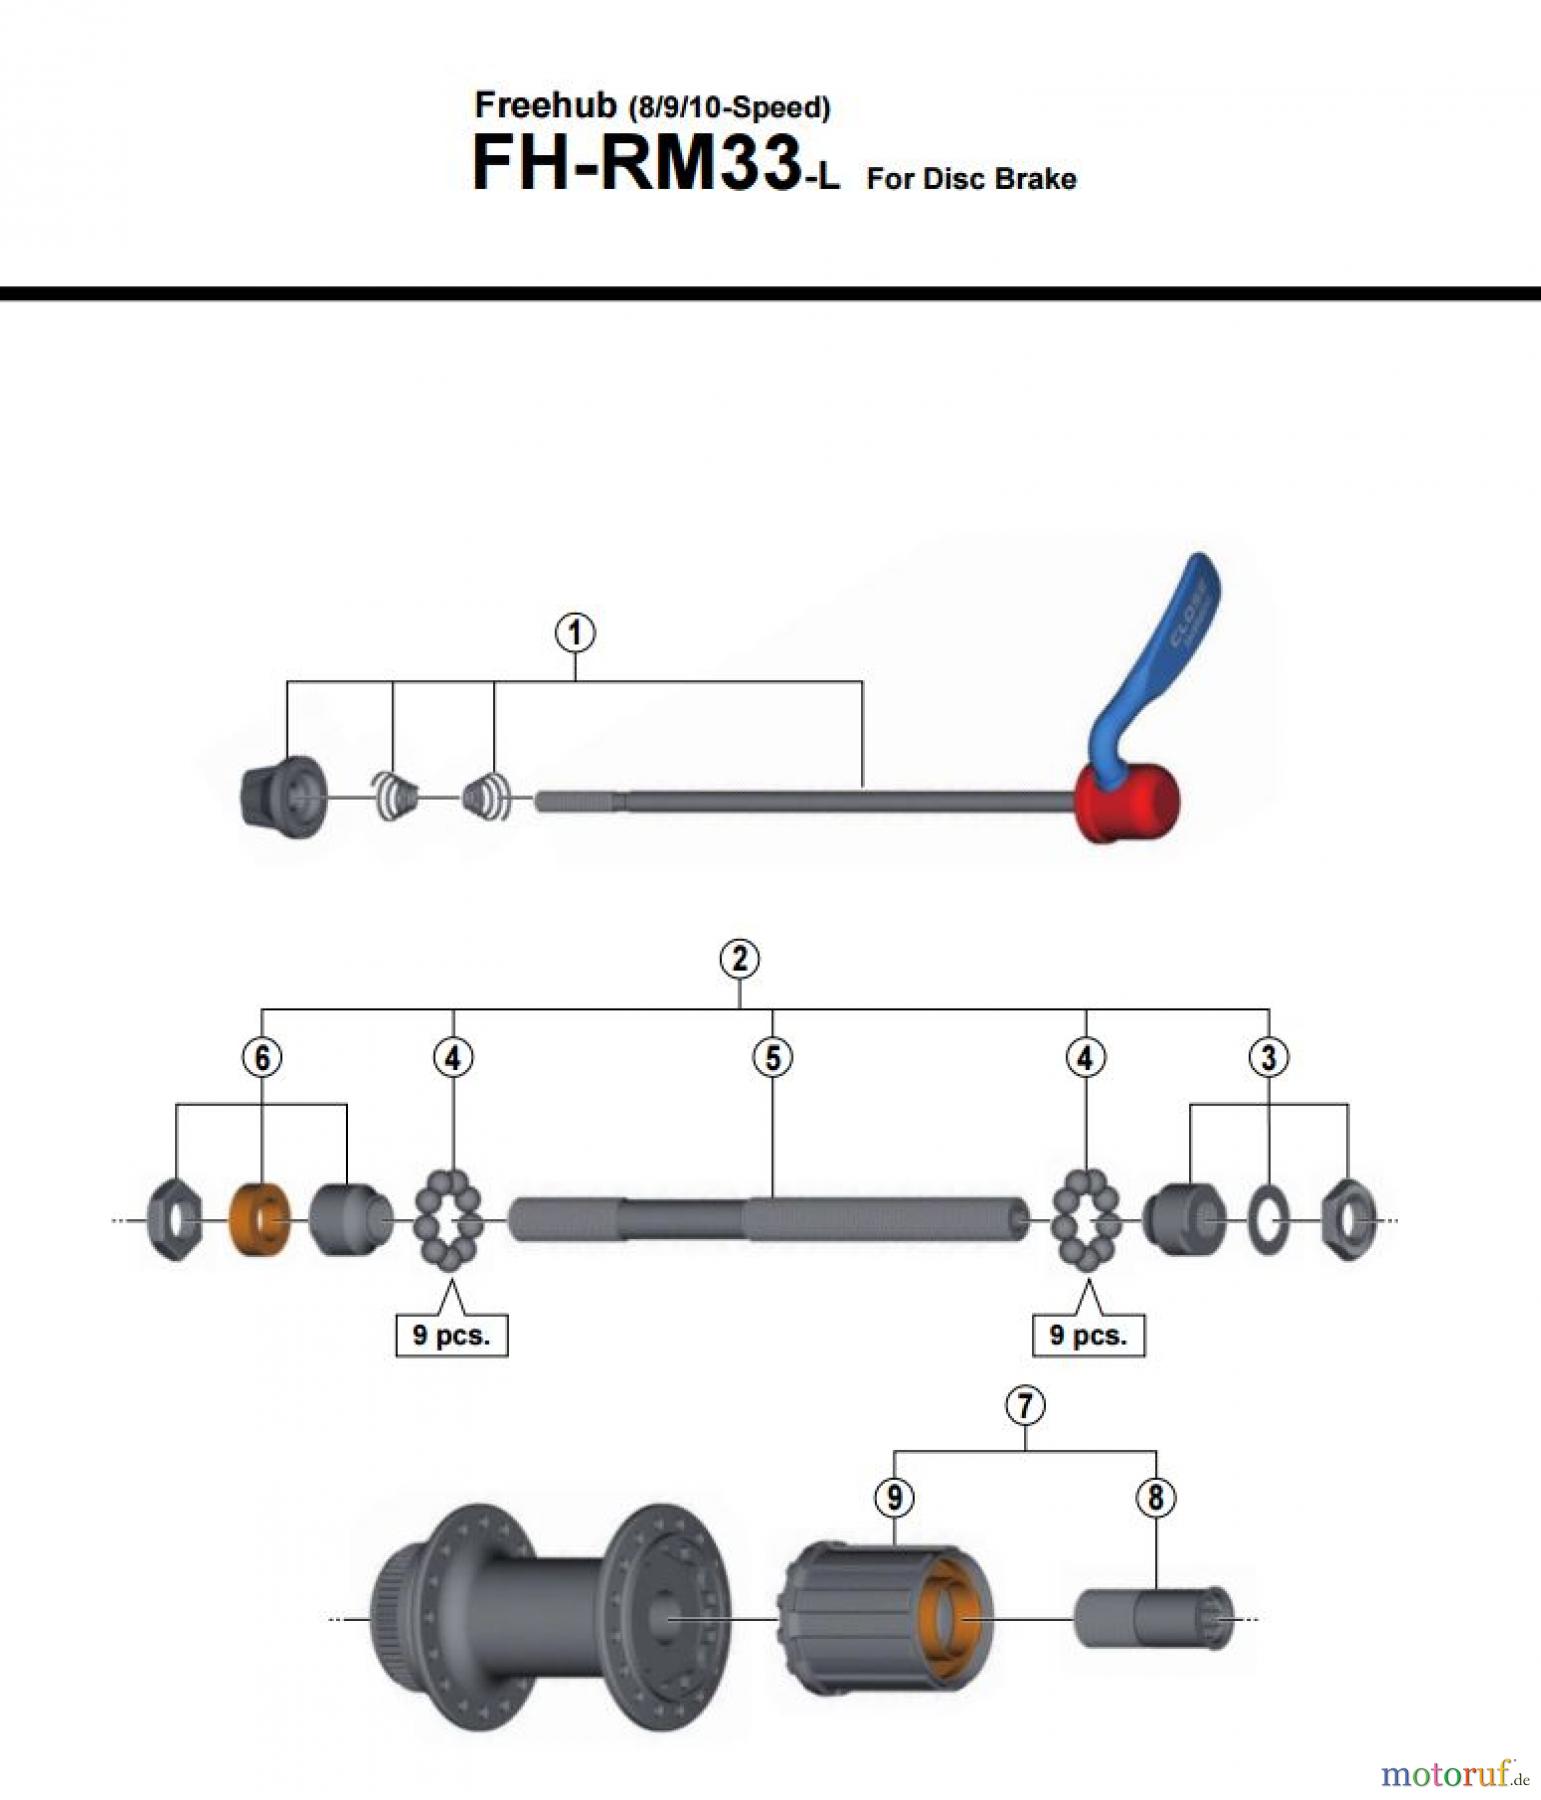  Shimano FH Free Hub - Freilaufnabe FH-RM33- 3650  Freehub (8/9/10-Speed)